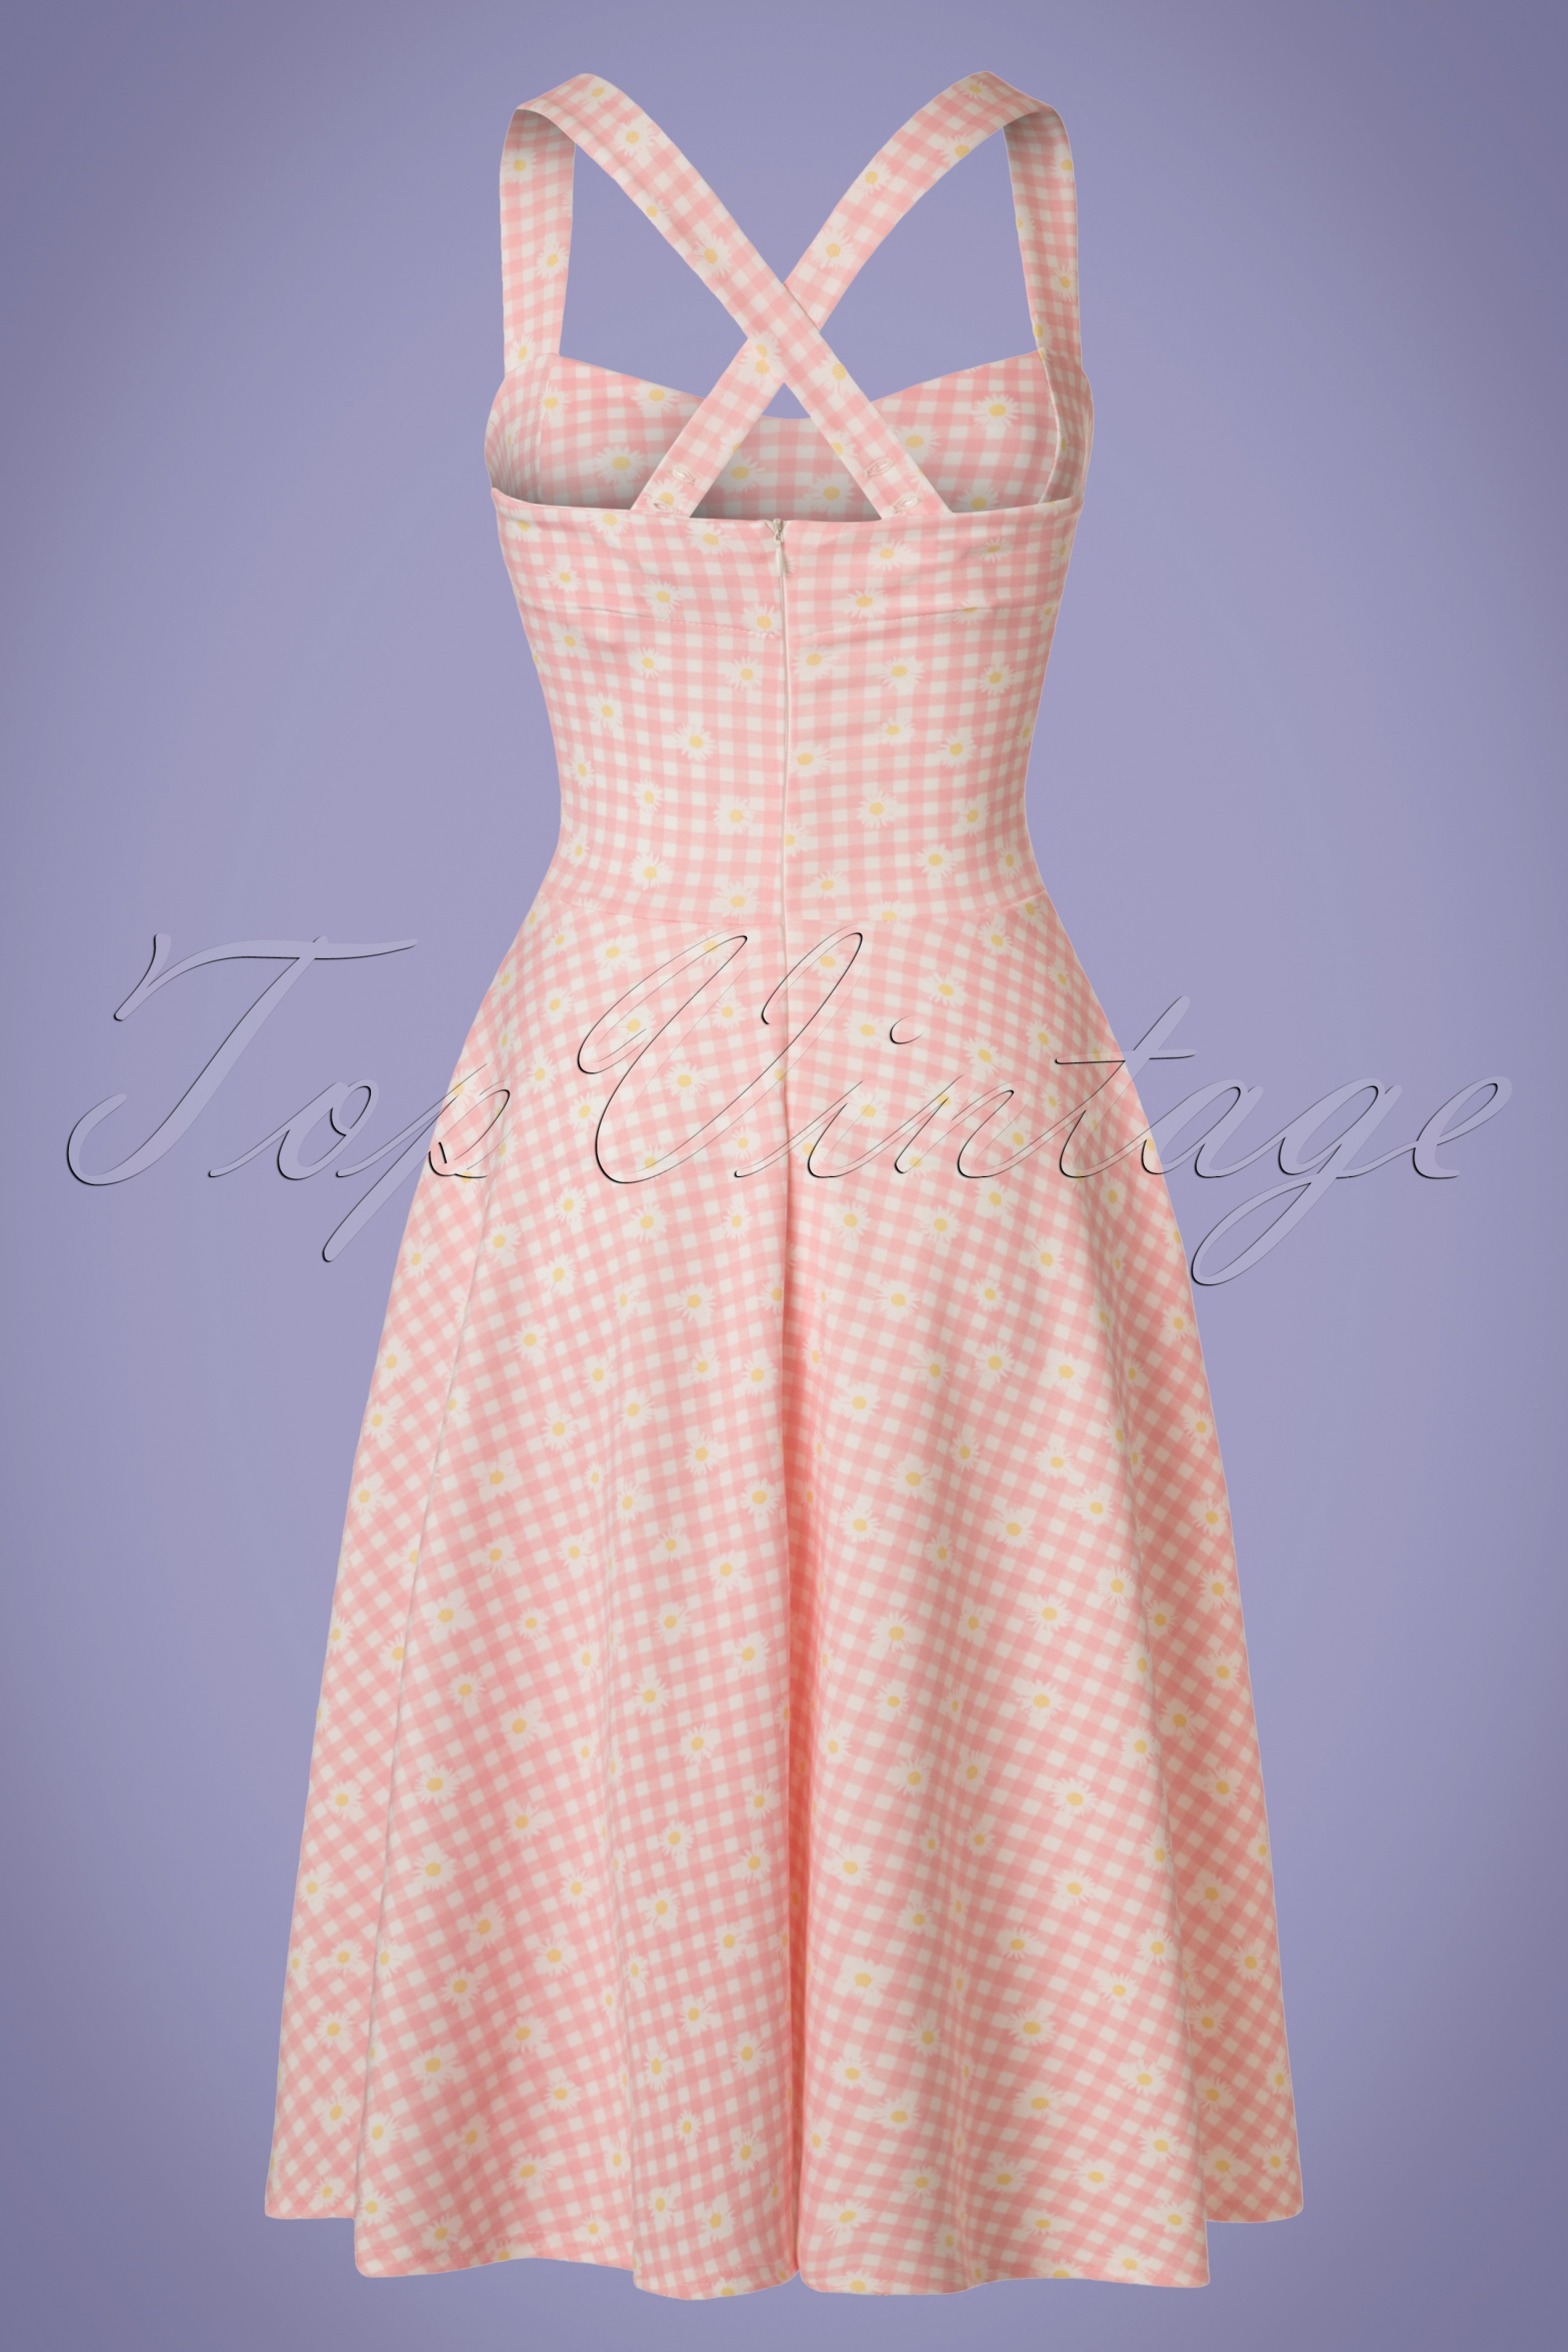 Vintage Chic for Topvintage - Judith geruite swingjurk in roze en wit 4